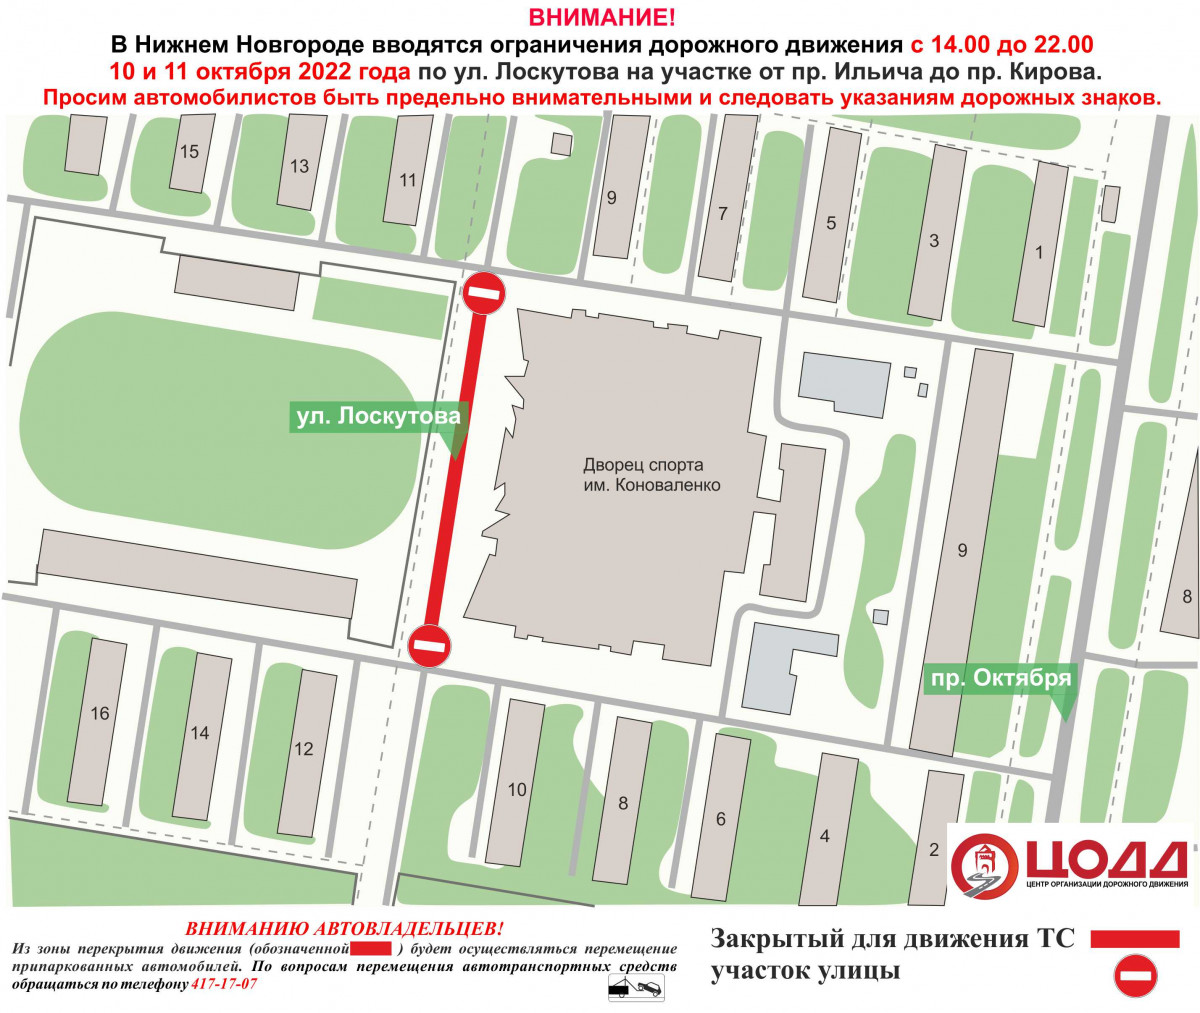 Движение транспорта приостановят на участке дороги на улице Лоскутова 10−11 октября